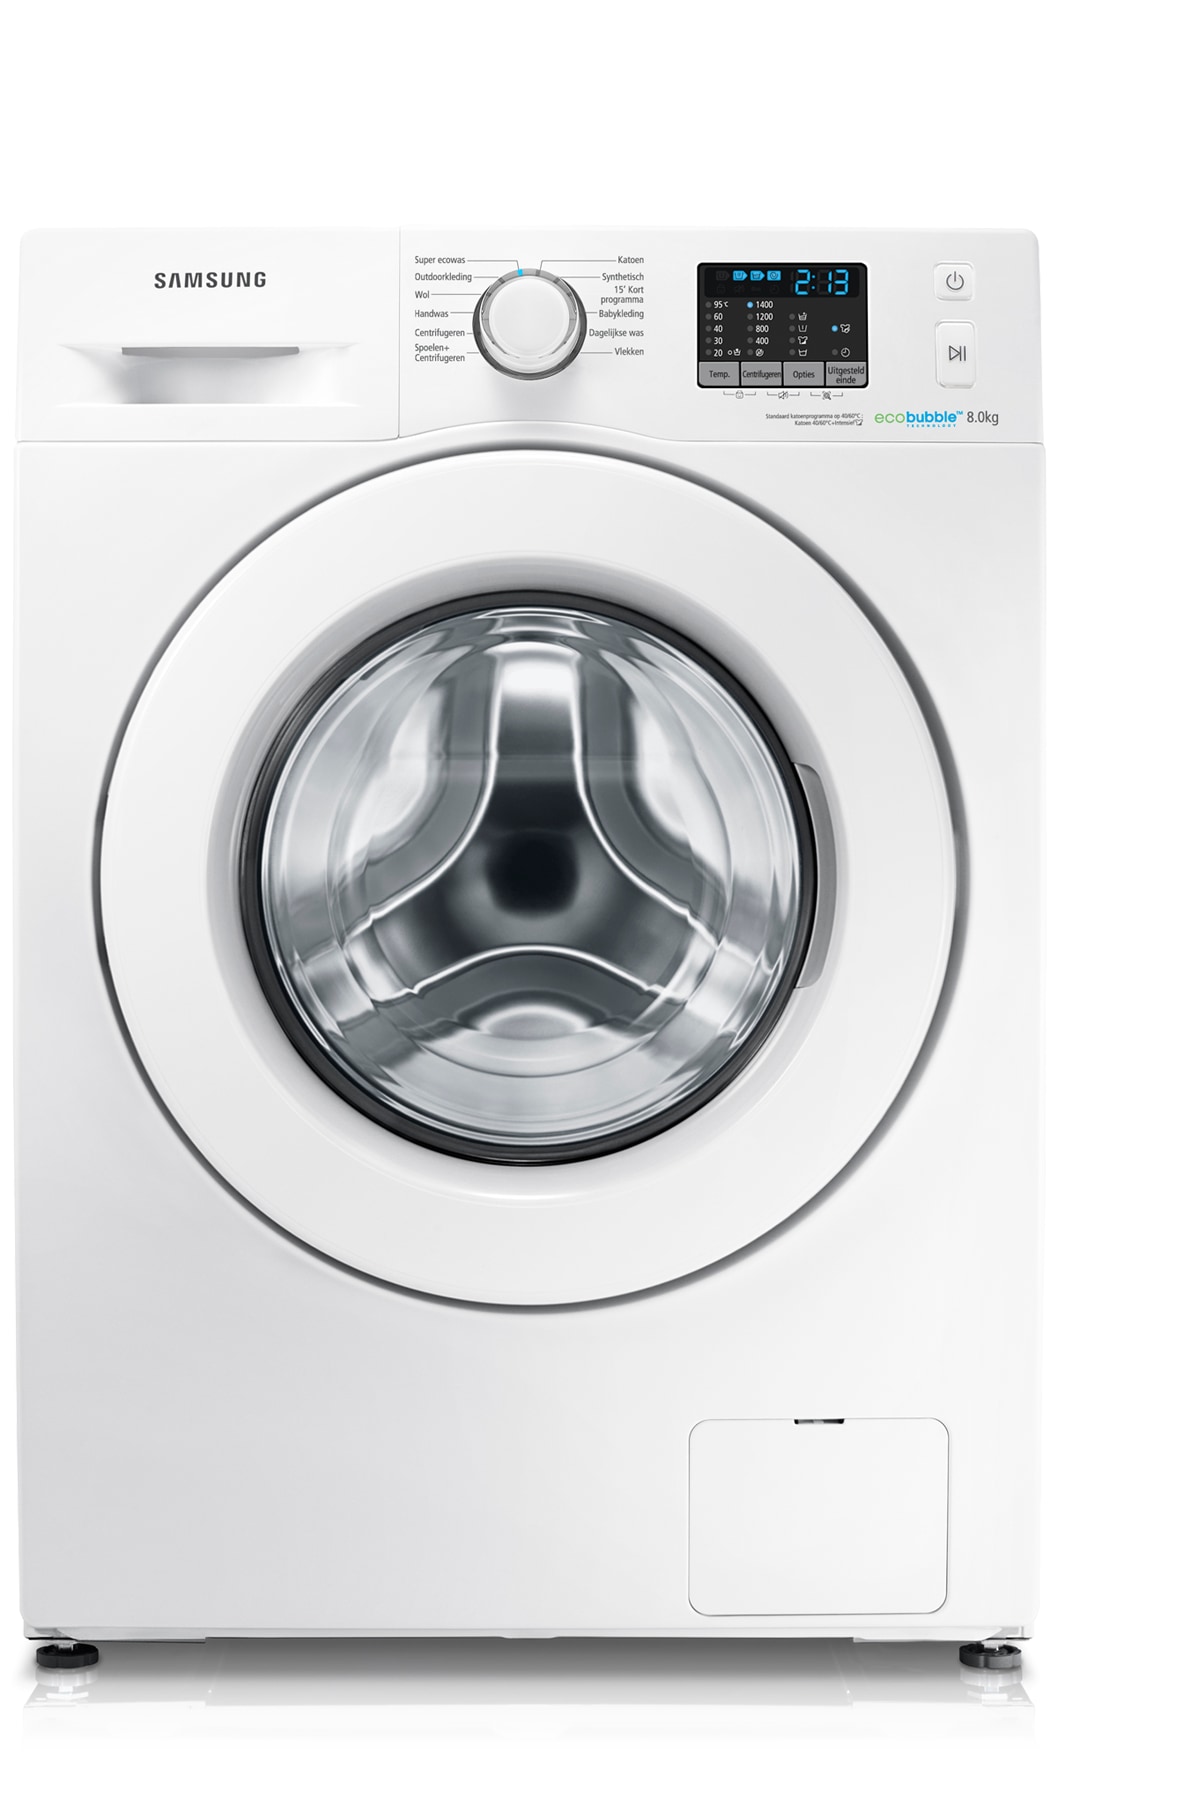 Korst Wonderbaarlijk Aap A+++ EcoBubble 1400 toeren 8 KG Wasmachine | Samsung Service NL